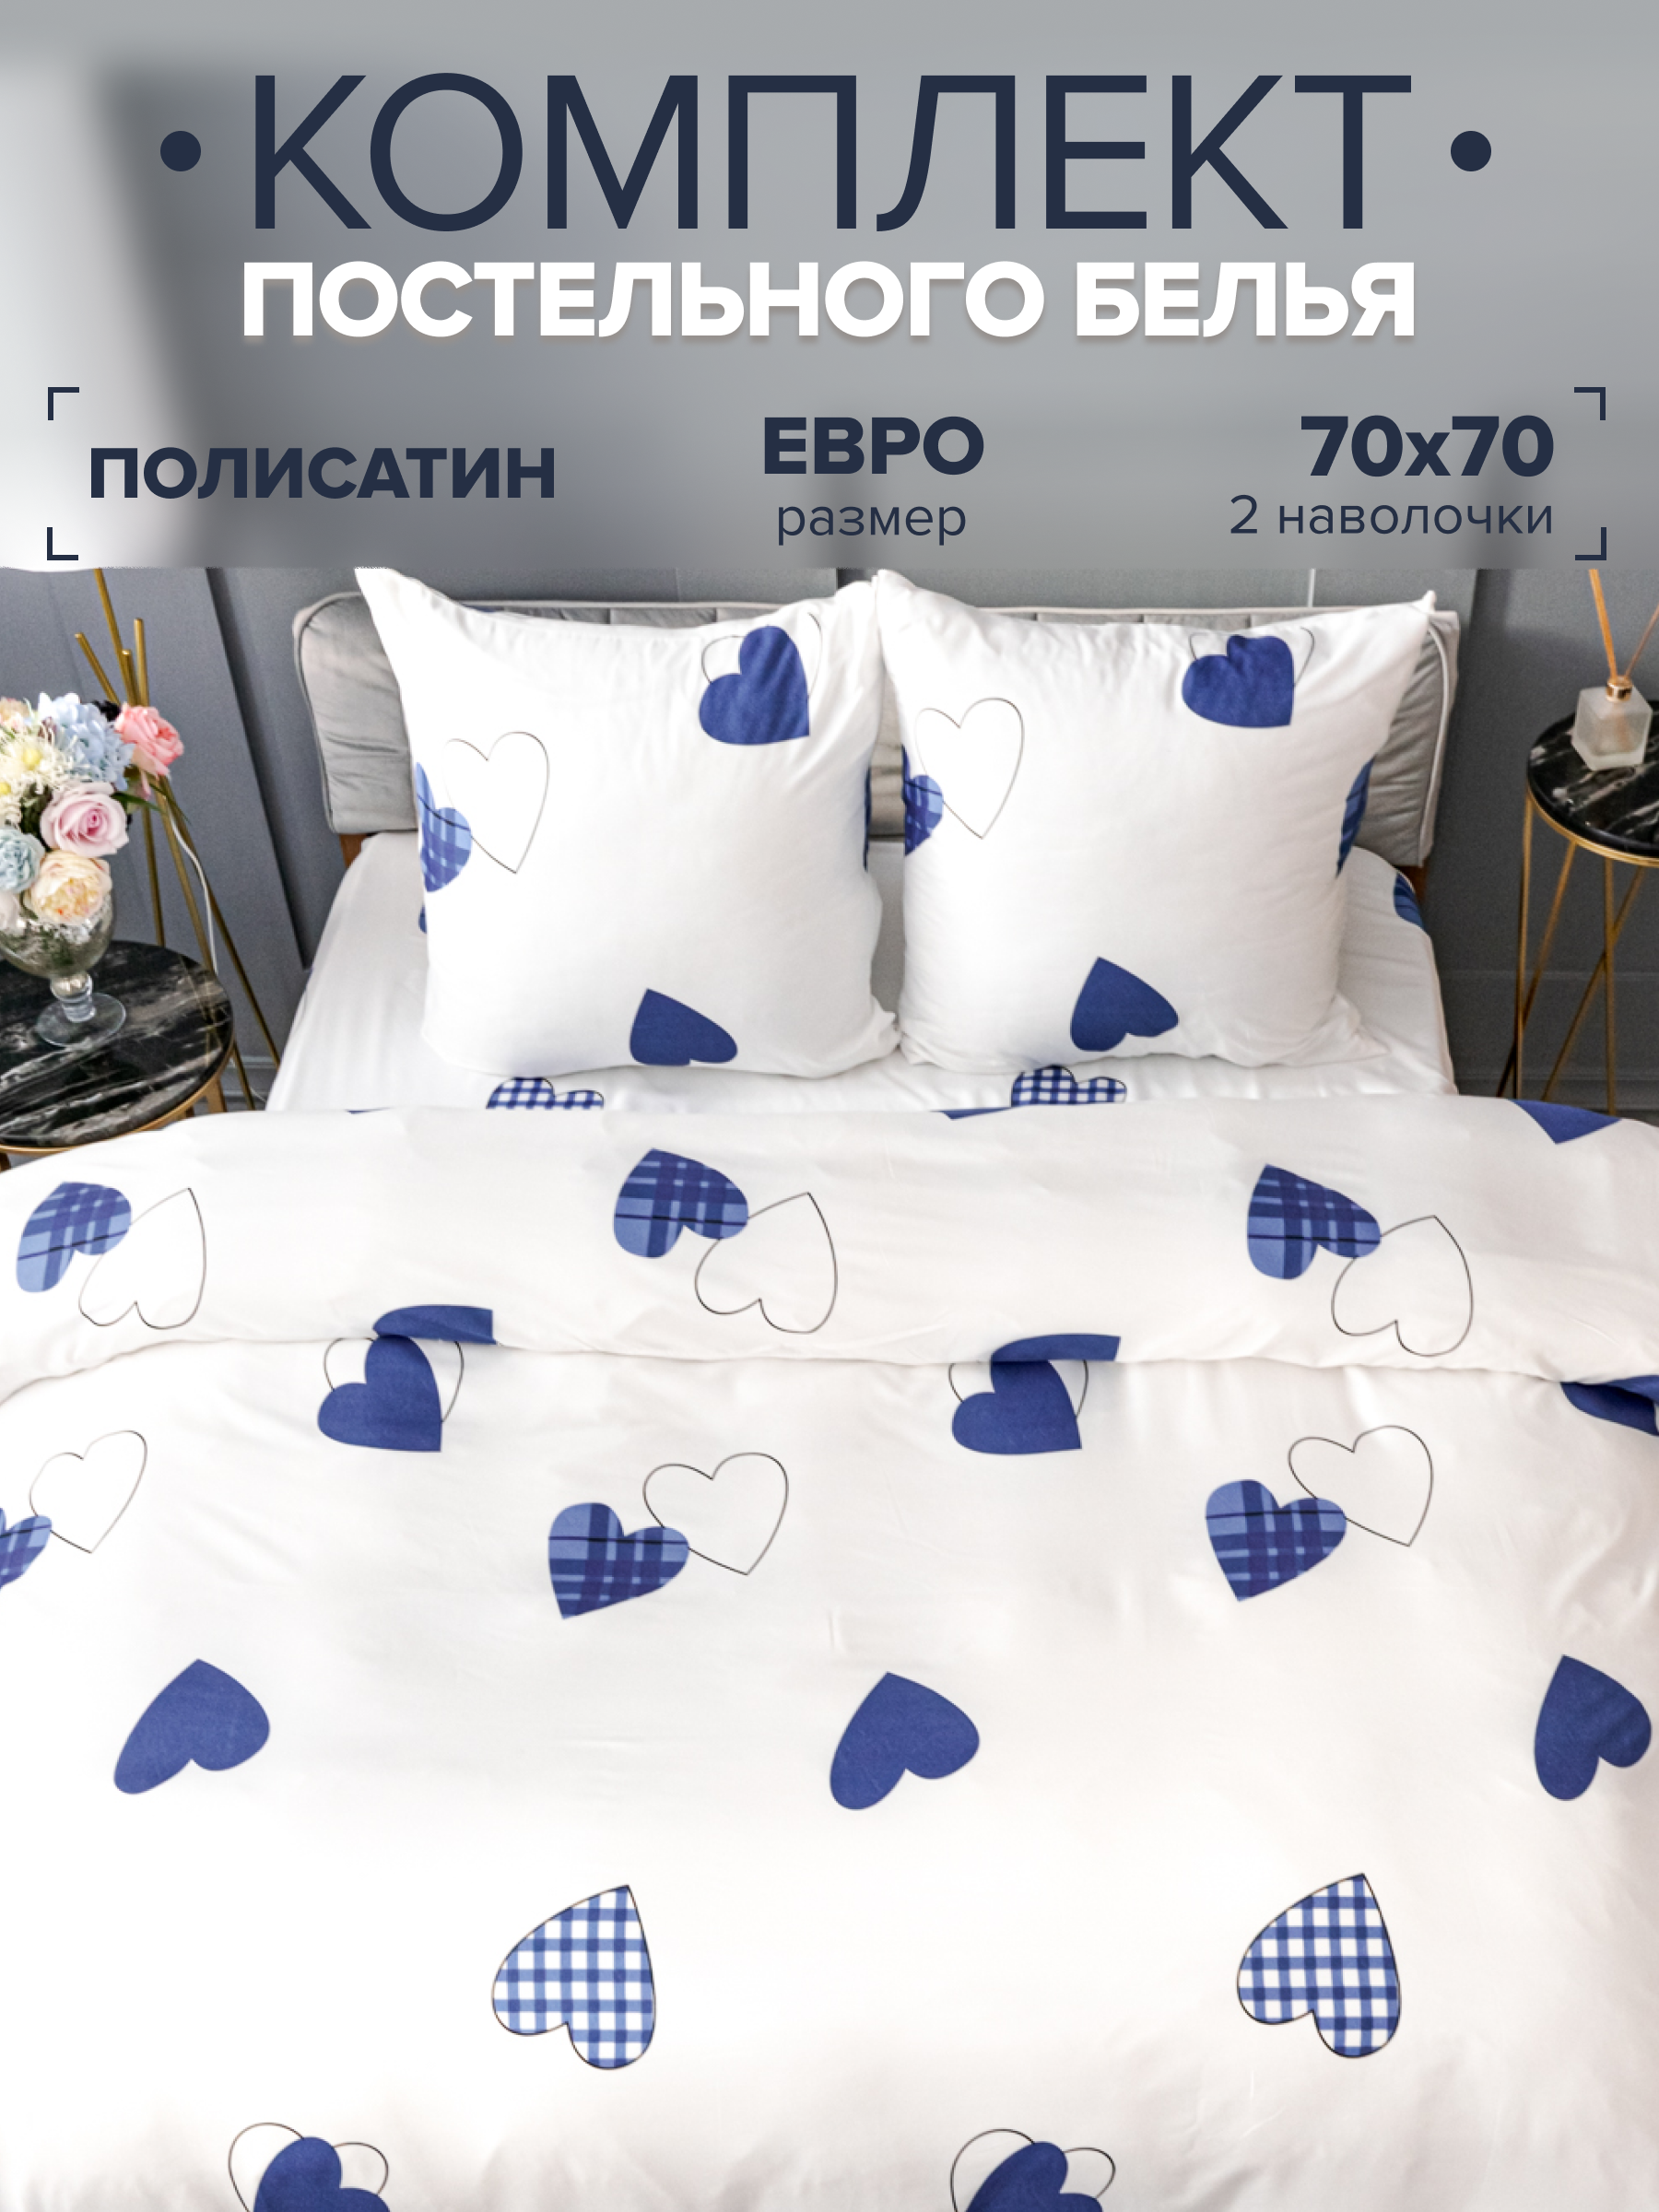 Комплект постельного белья Павлина 9347-05 (251/1) евро, Полисатин, наволочки 70x70